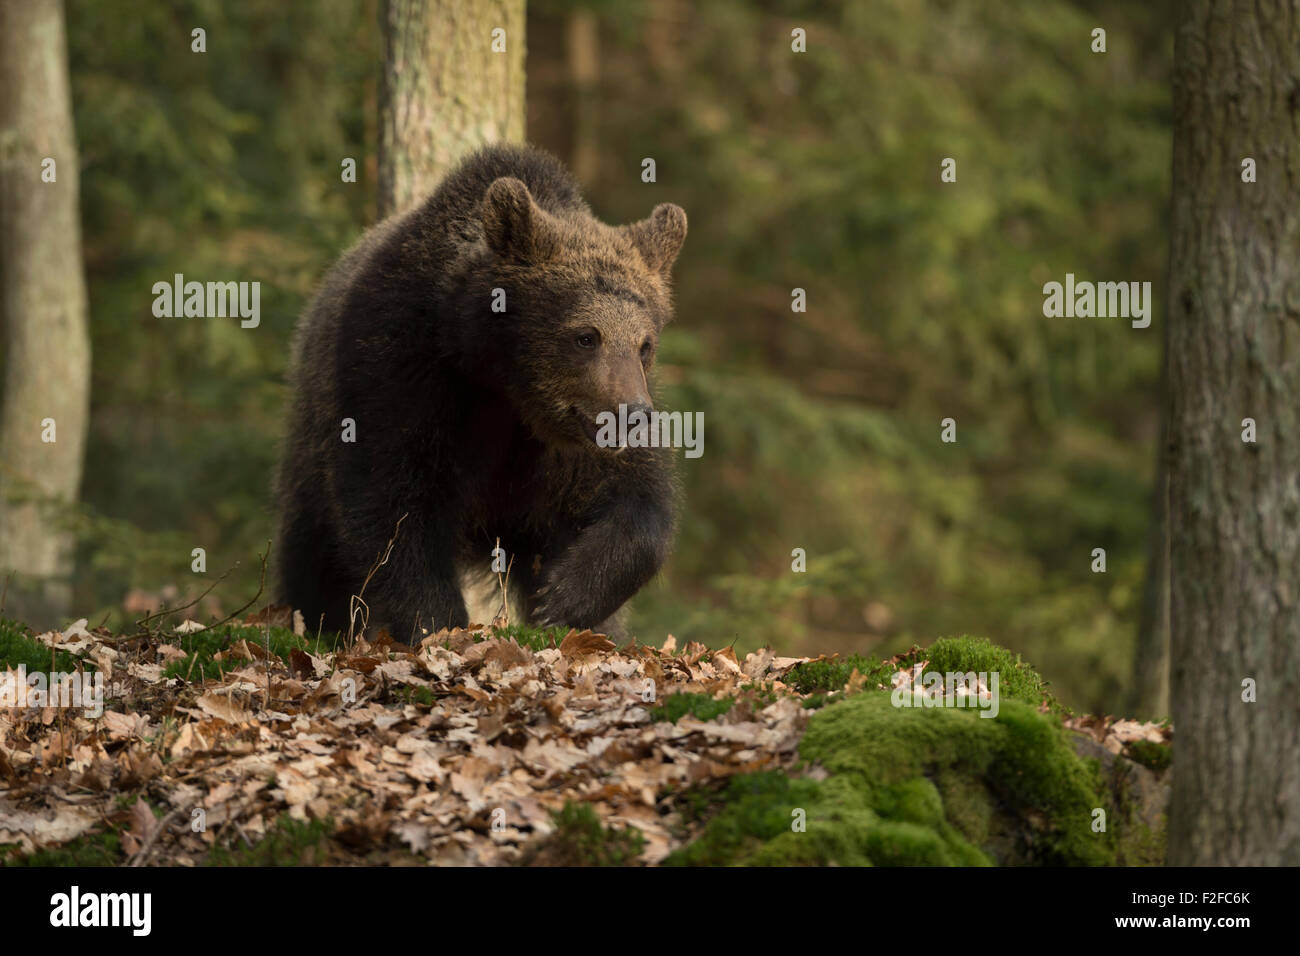 Ours brun européen / Europäischer Braunbär ( Ursus arctos ) promenades, traverse une forêt avec feuillage flétri couverts au sol. Banque D'Images